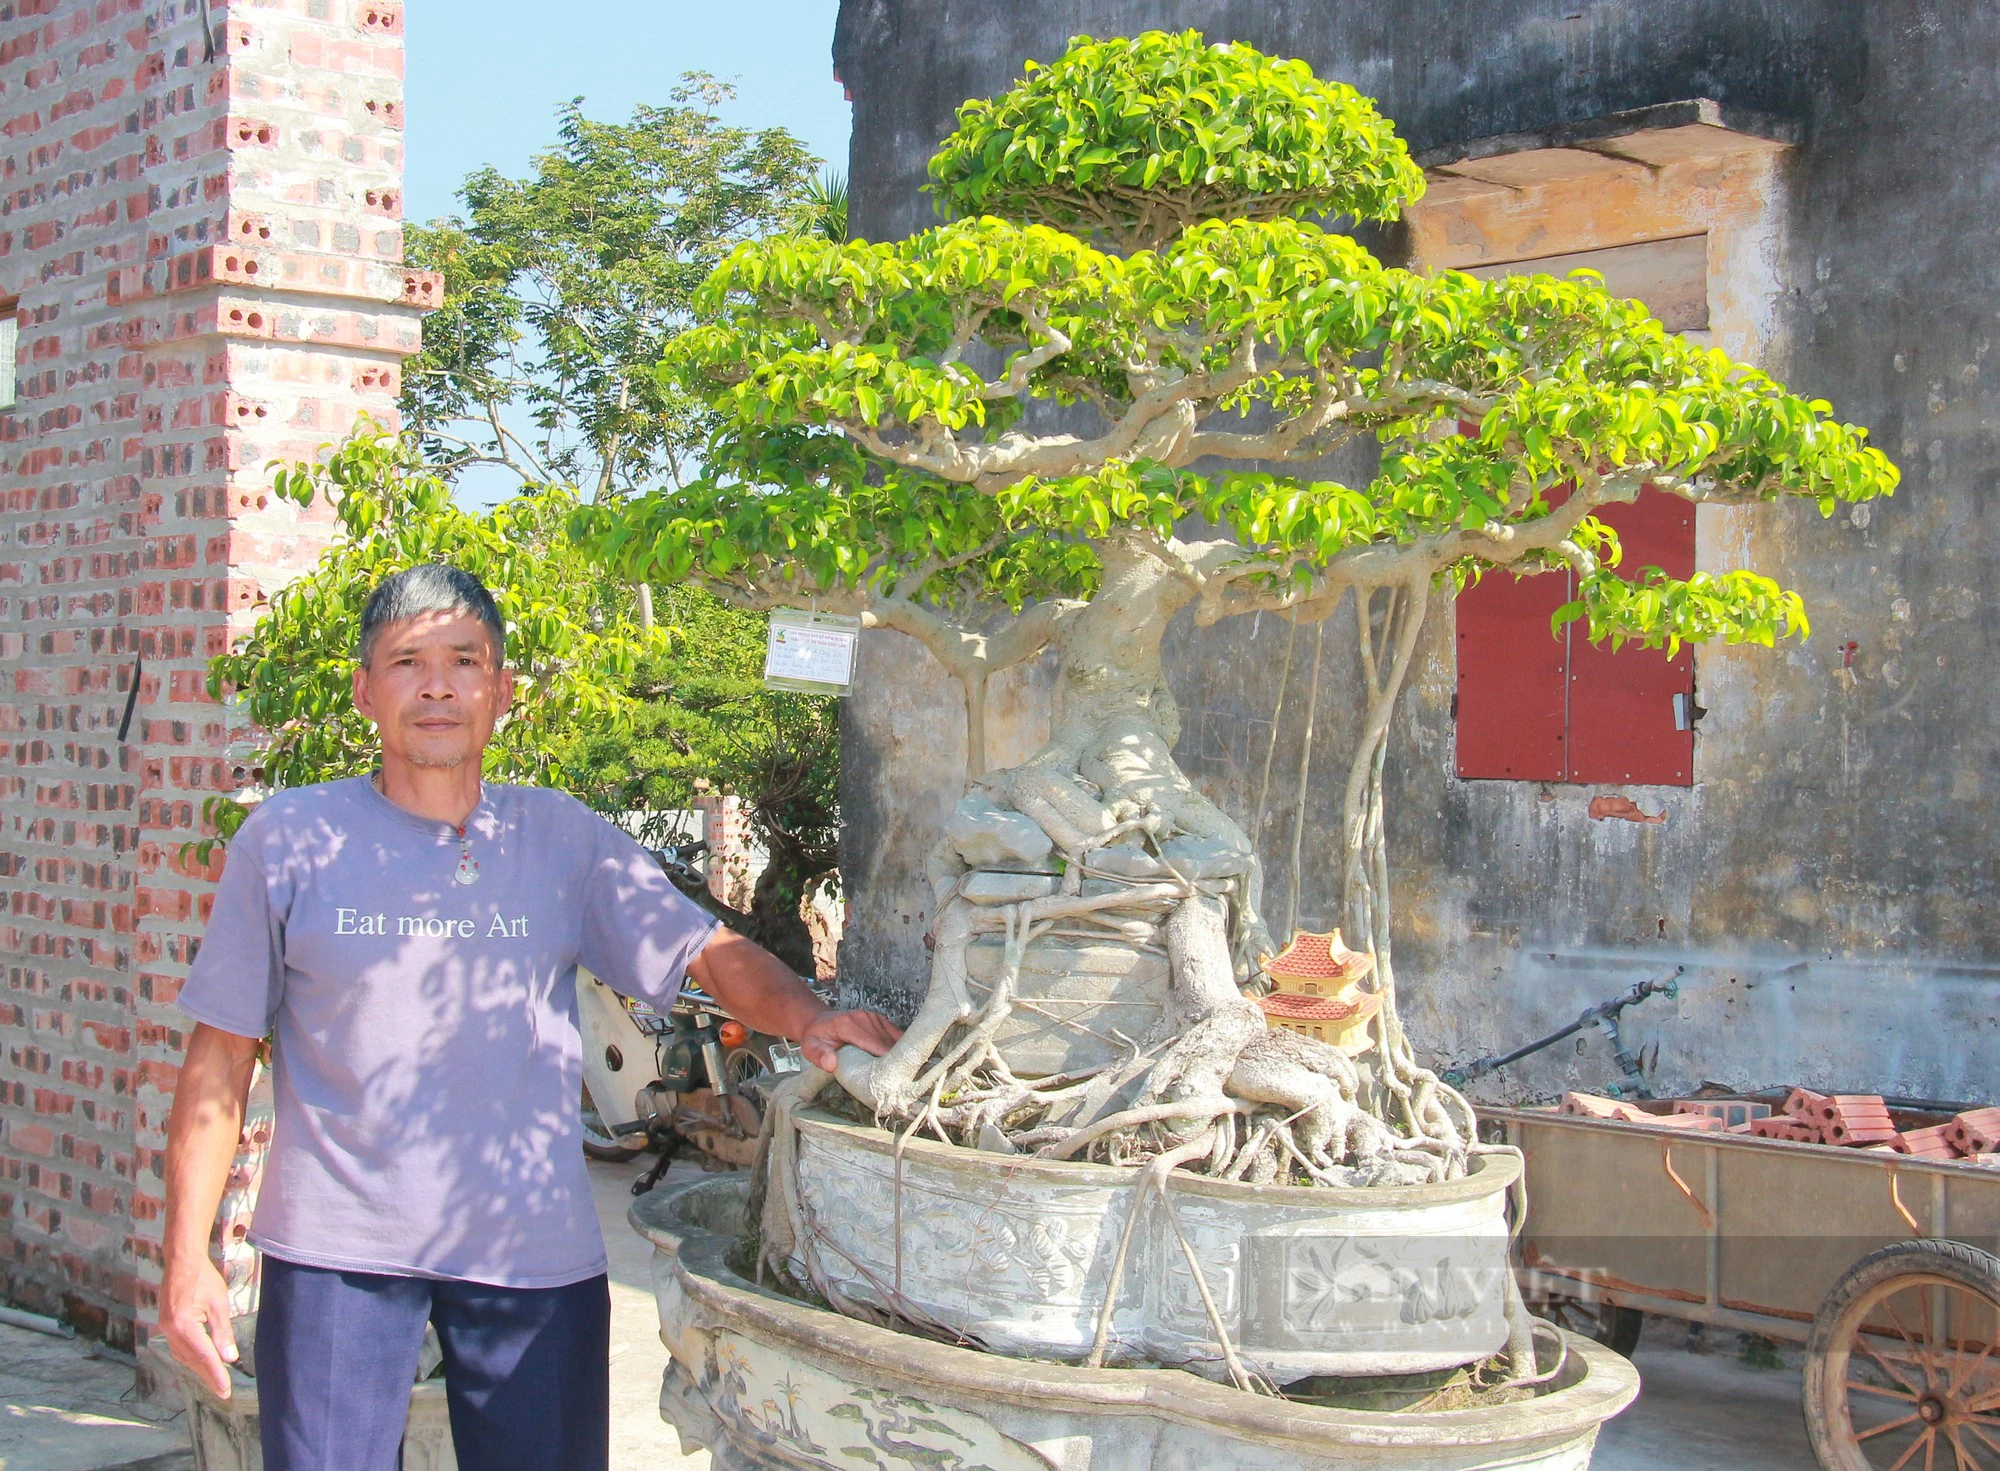 Chăn nuôi không hiệu quả, anh nông dân Nam Định chuyển sang kinh doanh cây cảnh, nào ngờ thắng lớn - Ảnh 5.